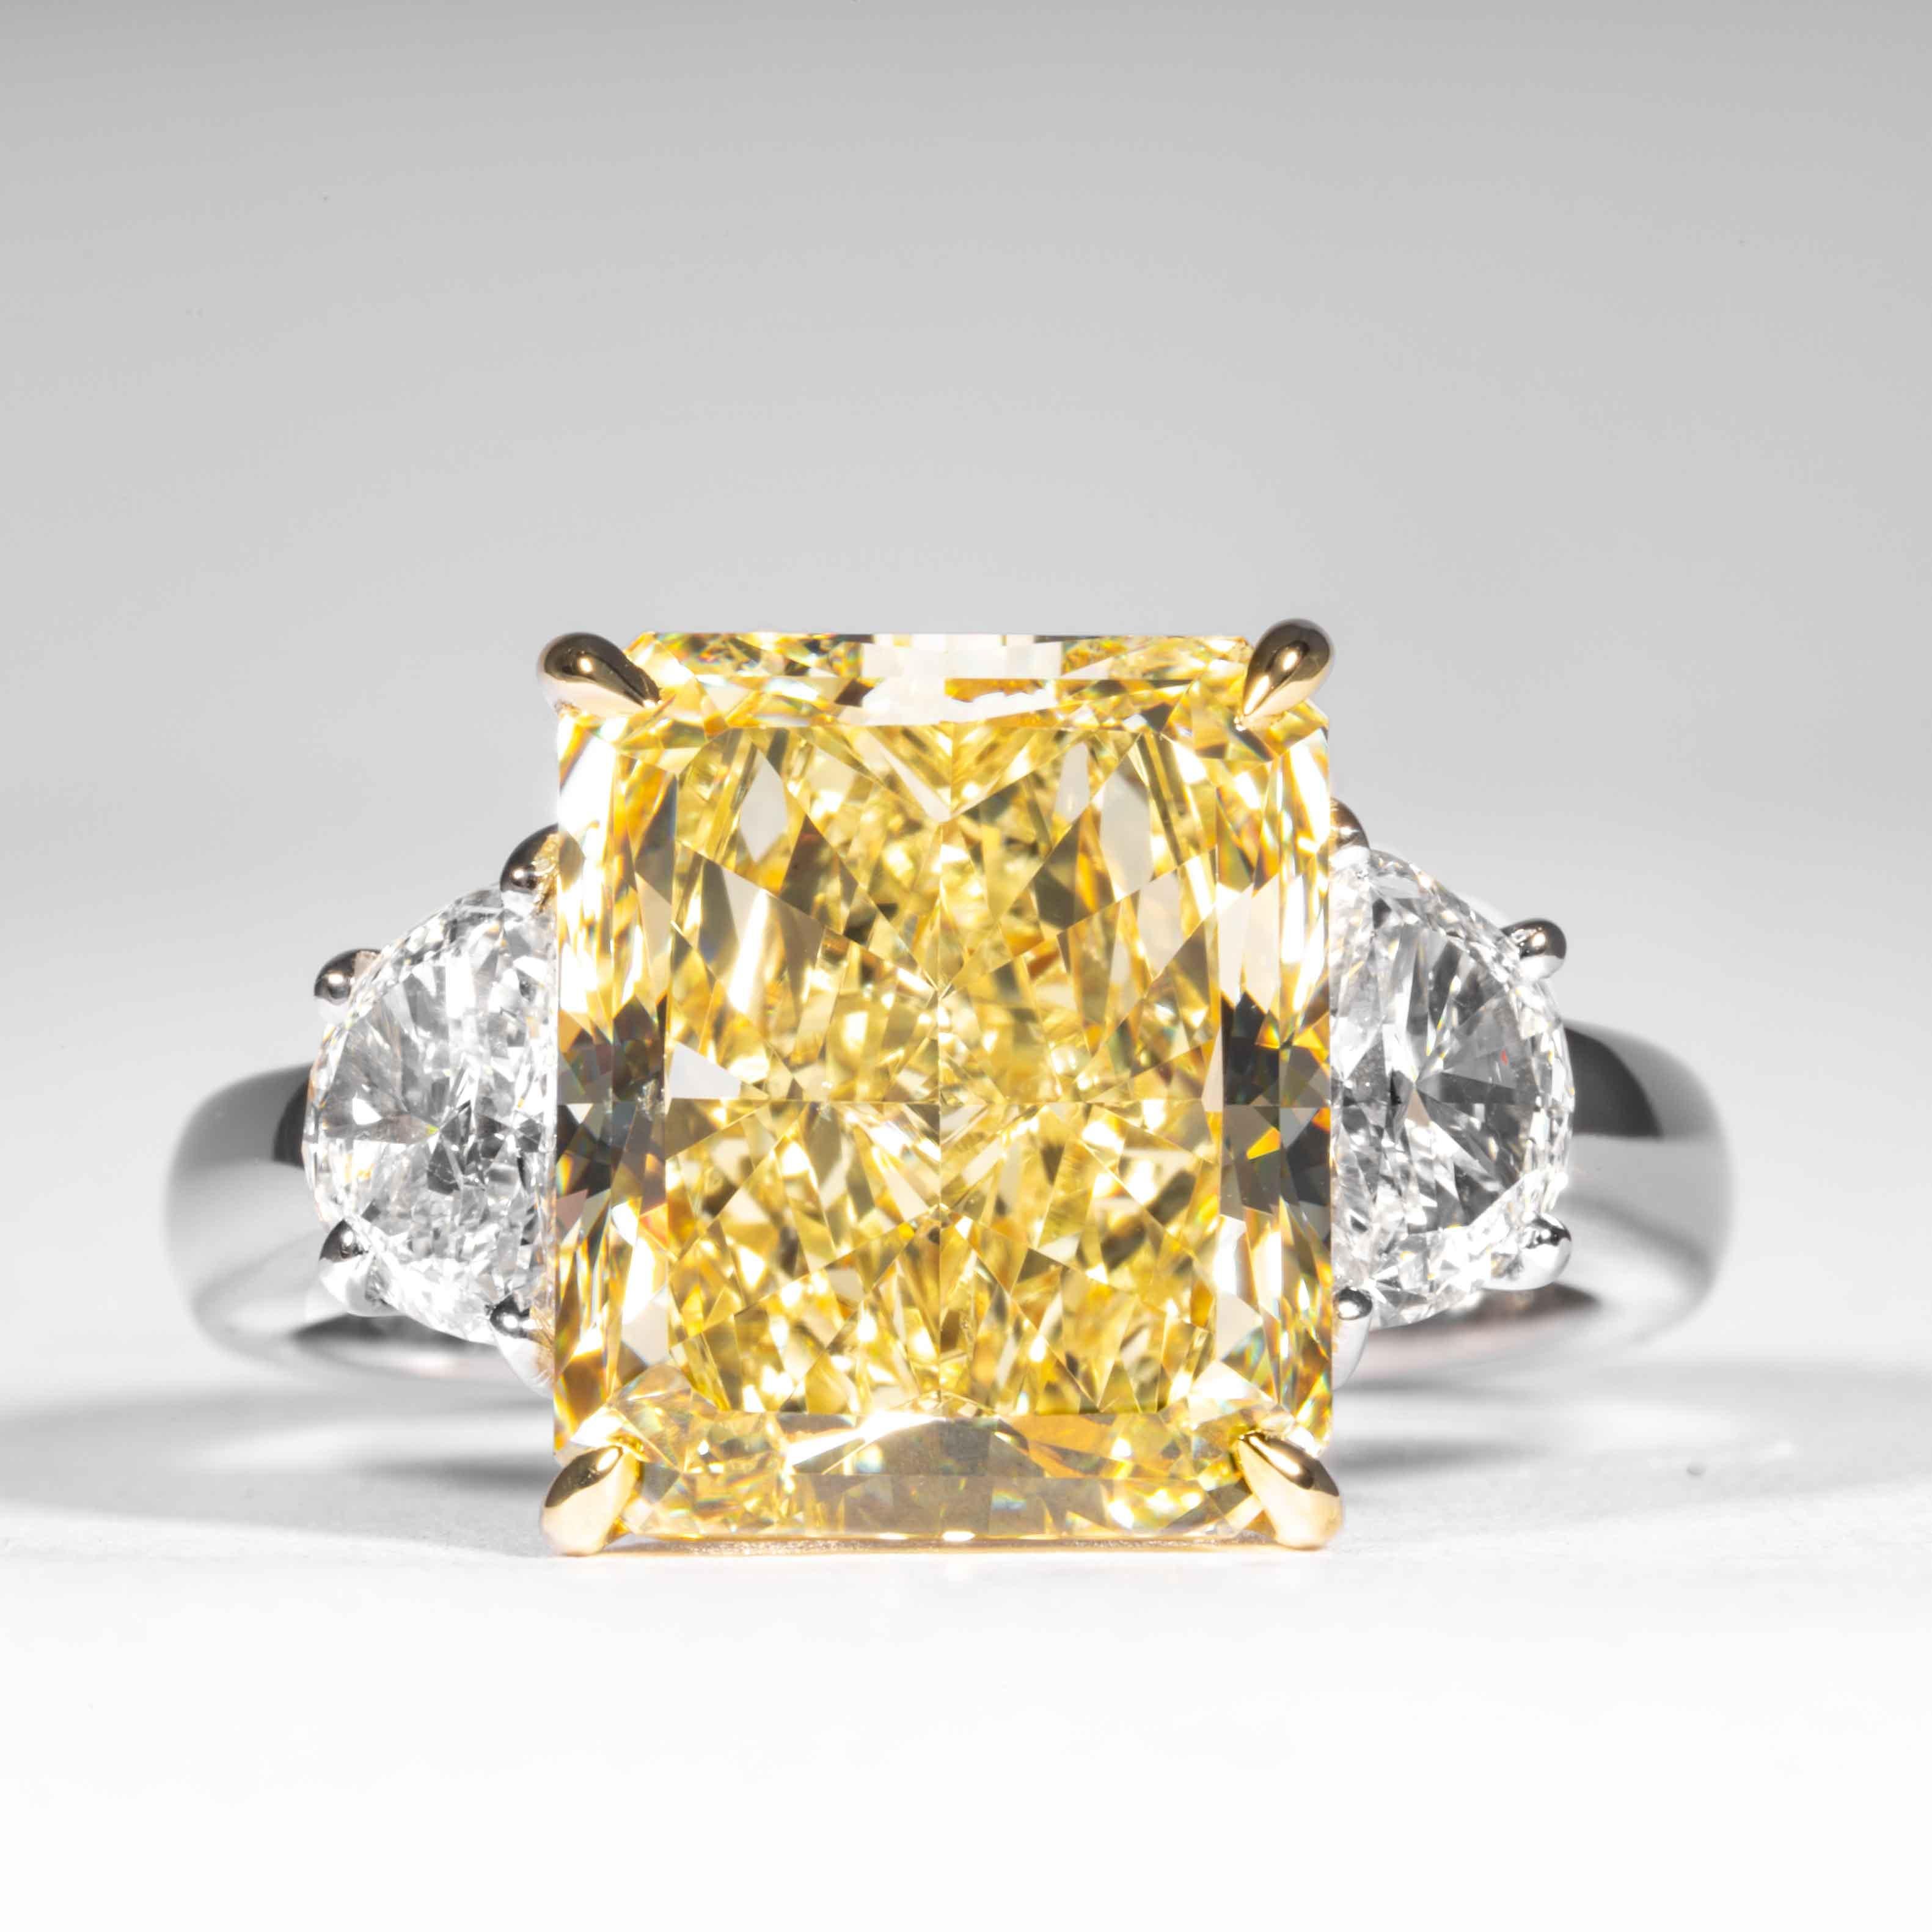 Ce diamant de couleur jaune radieux est proposé par Shreve, Crump & Low.  Ce diamant radiant jaune de fantaisie est serti sur mesure dans une bague à trois pierres en platine et or jaune 18 carats de marque Shreve, Crump & Low, composée d'un diamant